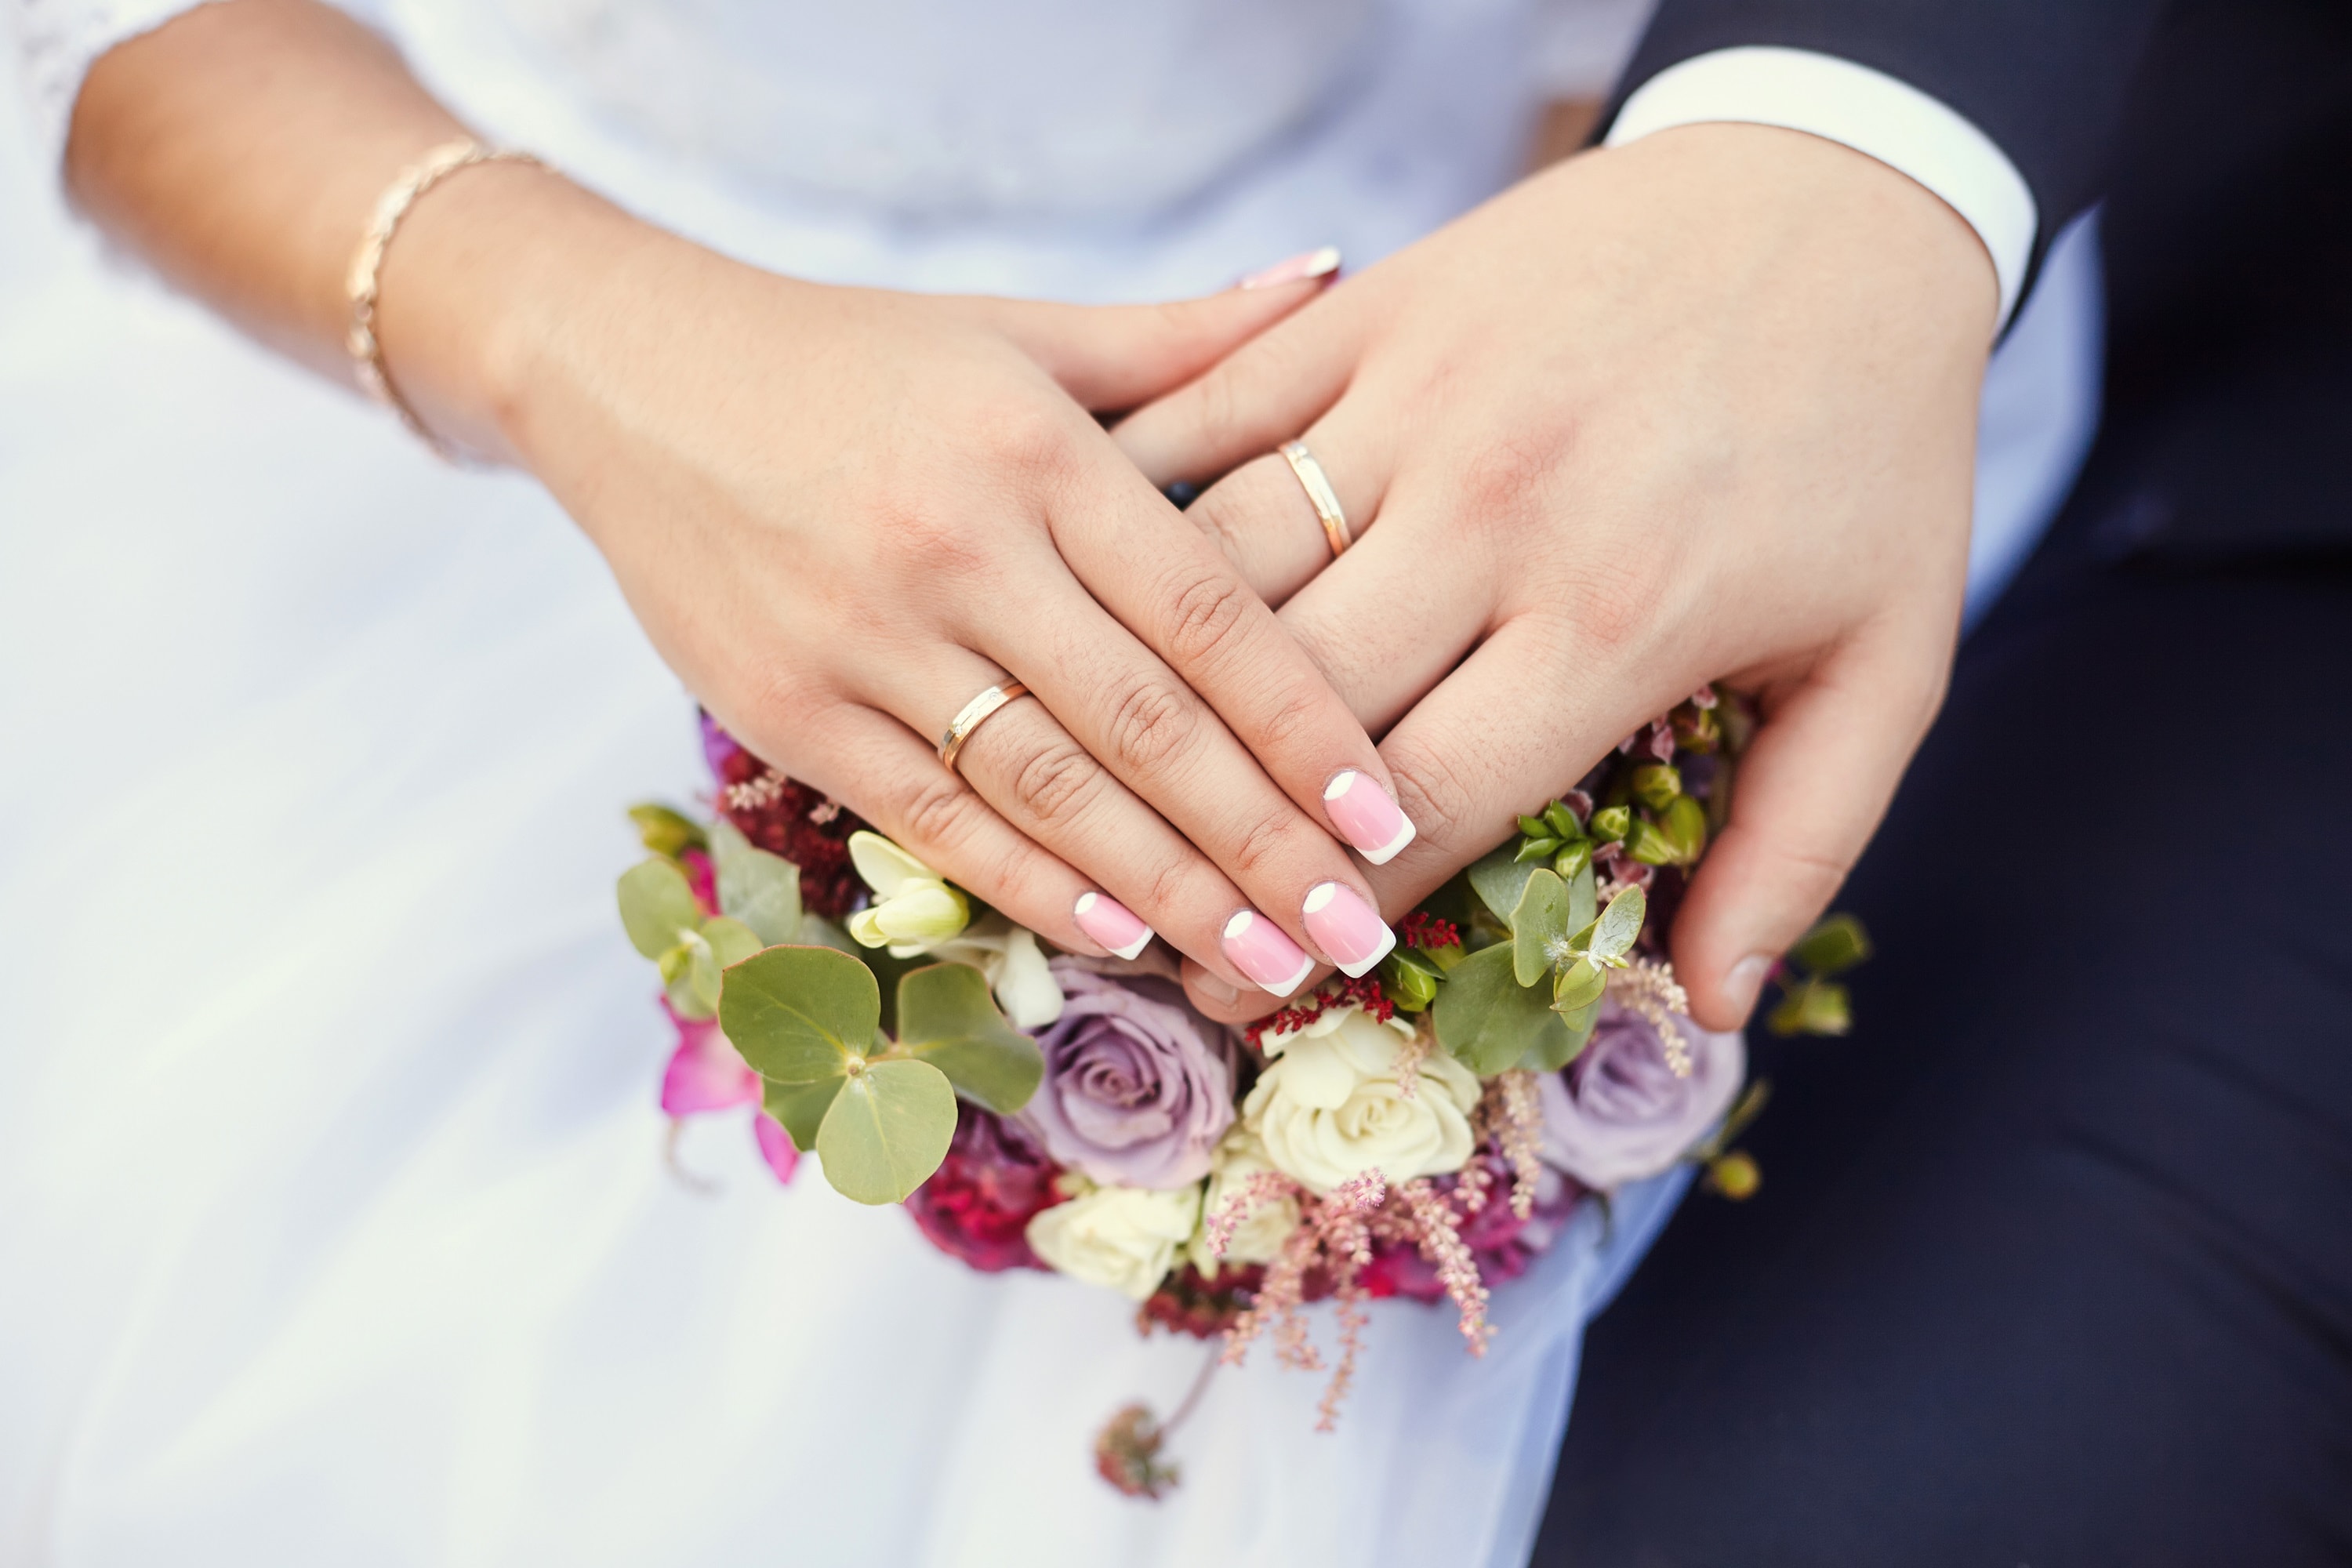 Скорое замужество. Невеста на руках у жениха. Замужество. Удачное замужество. Обручальные кольца для карты желаний.